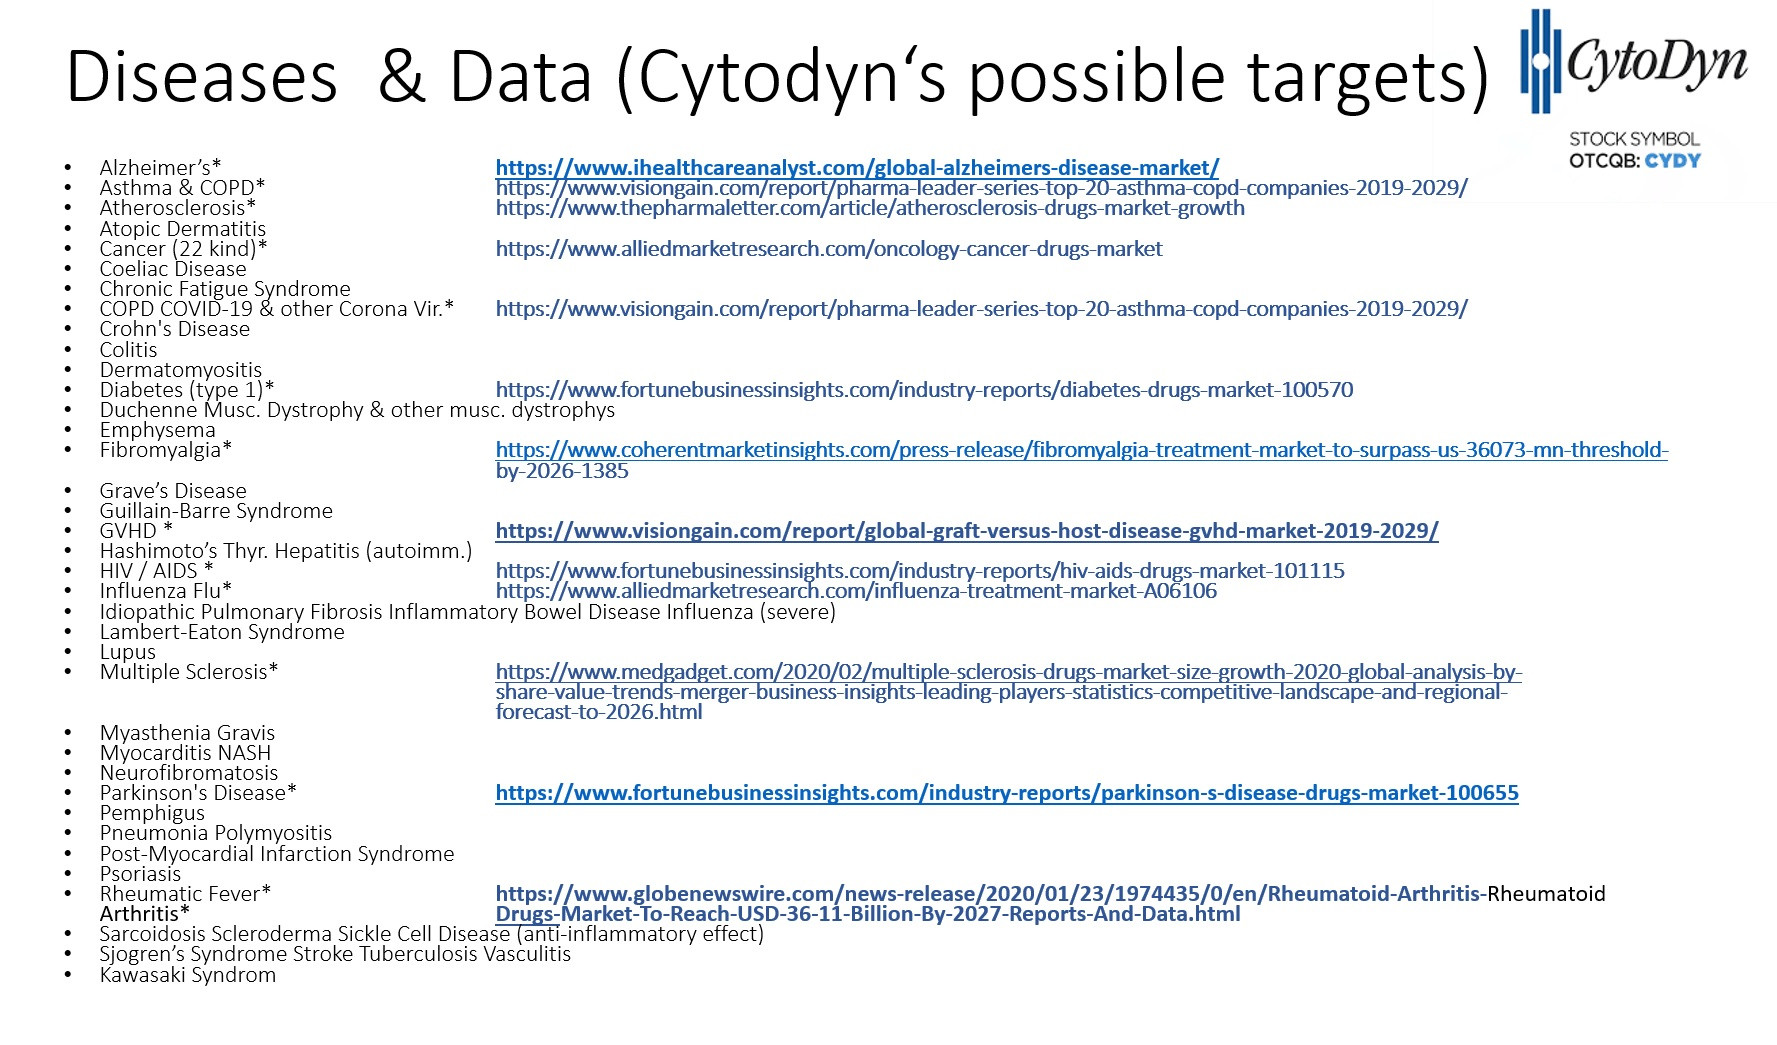 20200611122934-cytodyn.jpg